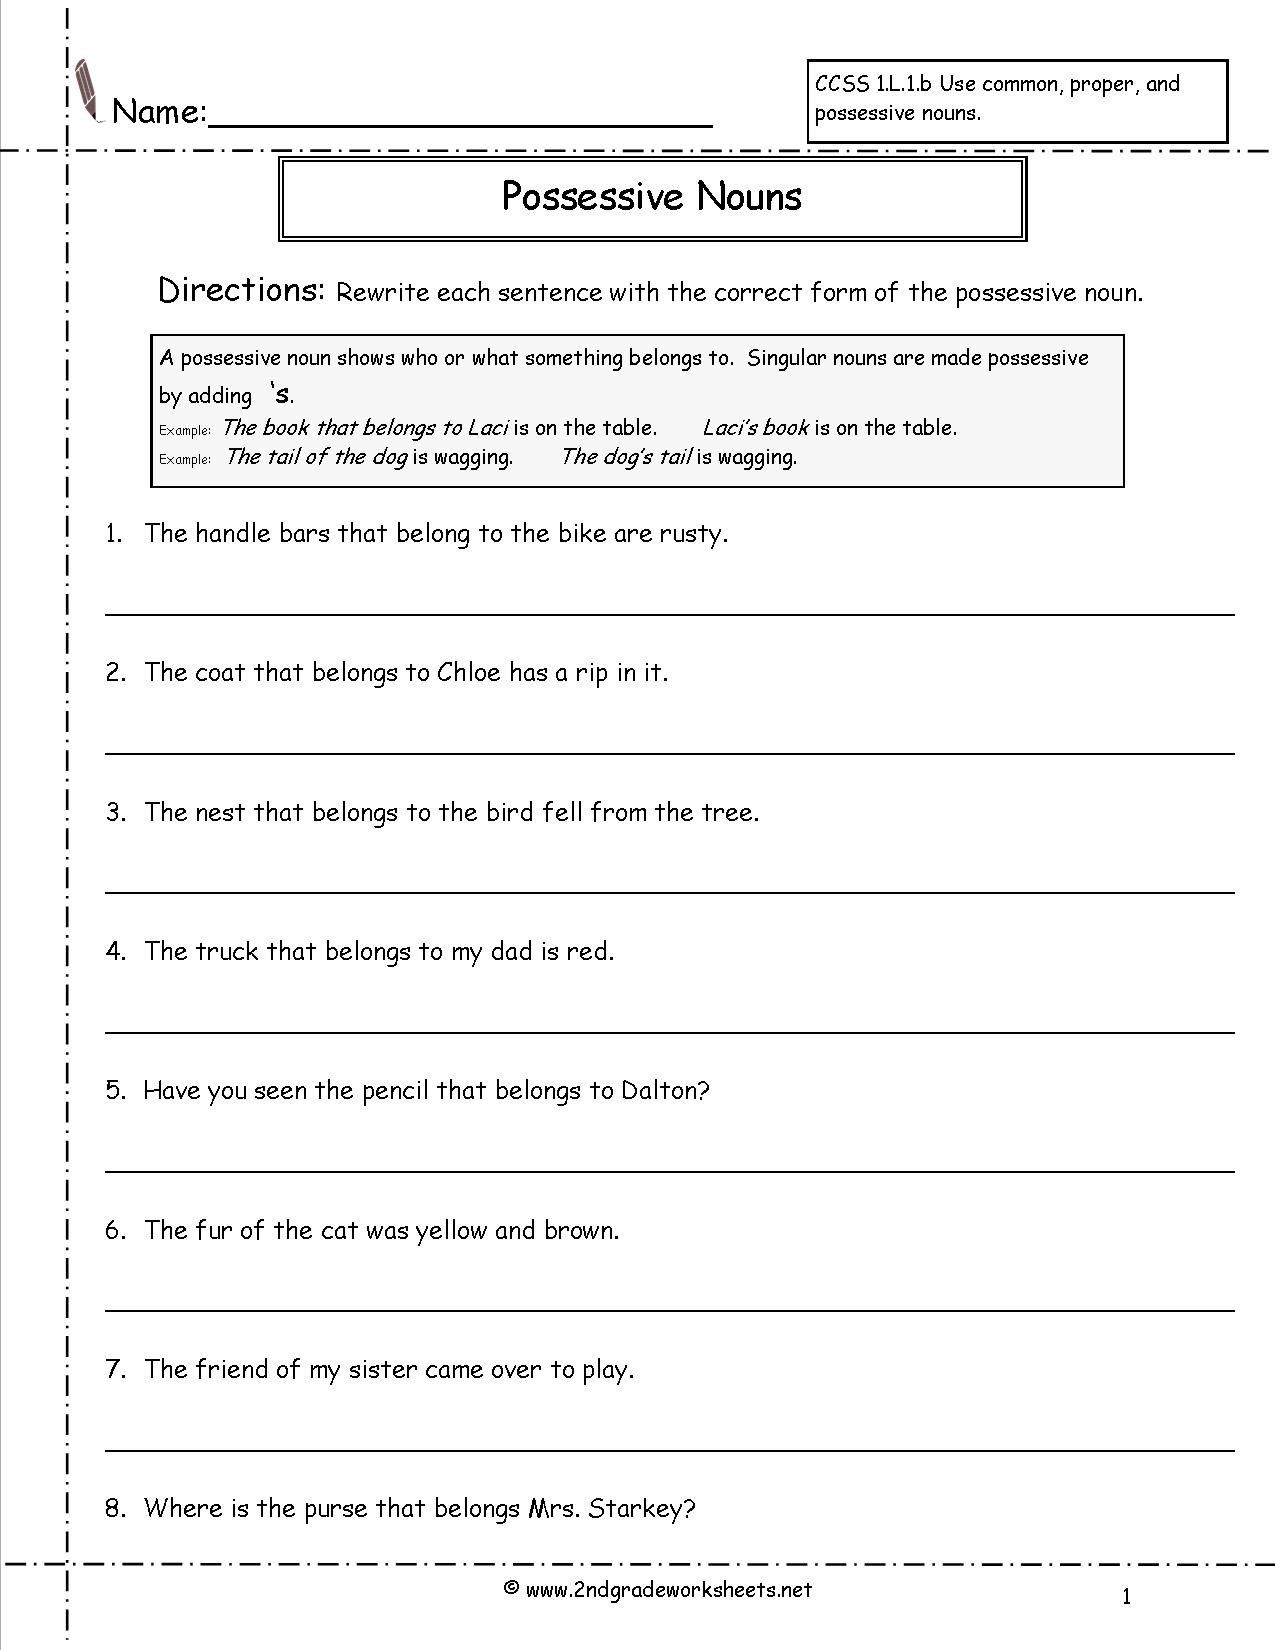 Making Possessive Nouns Worksheet 2nd Grade